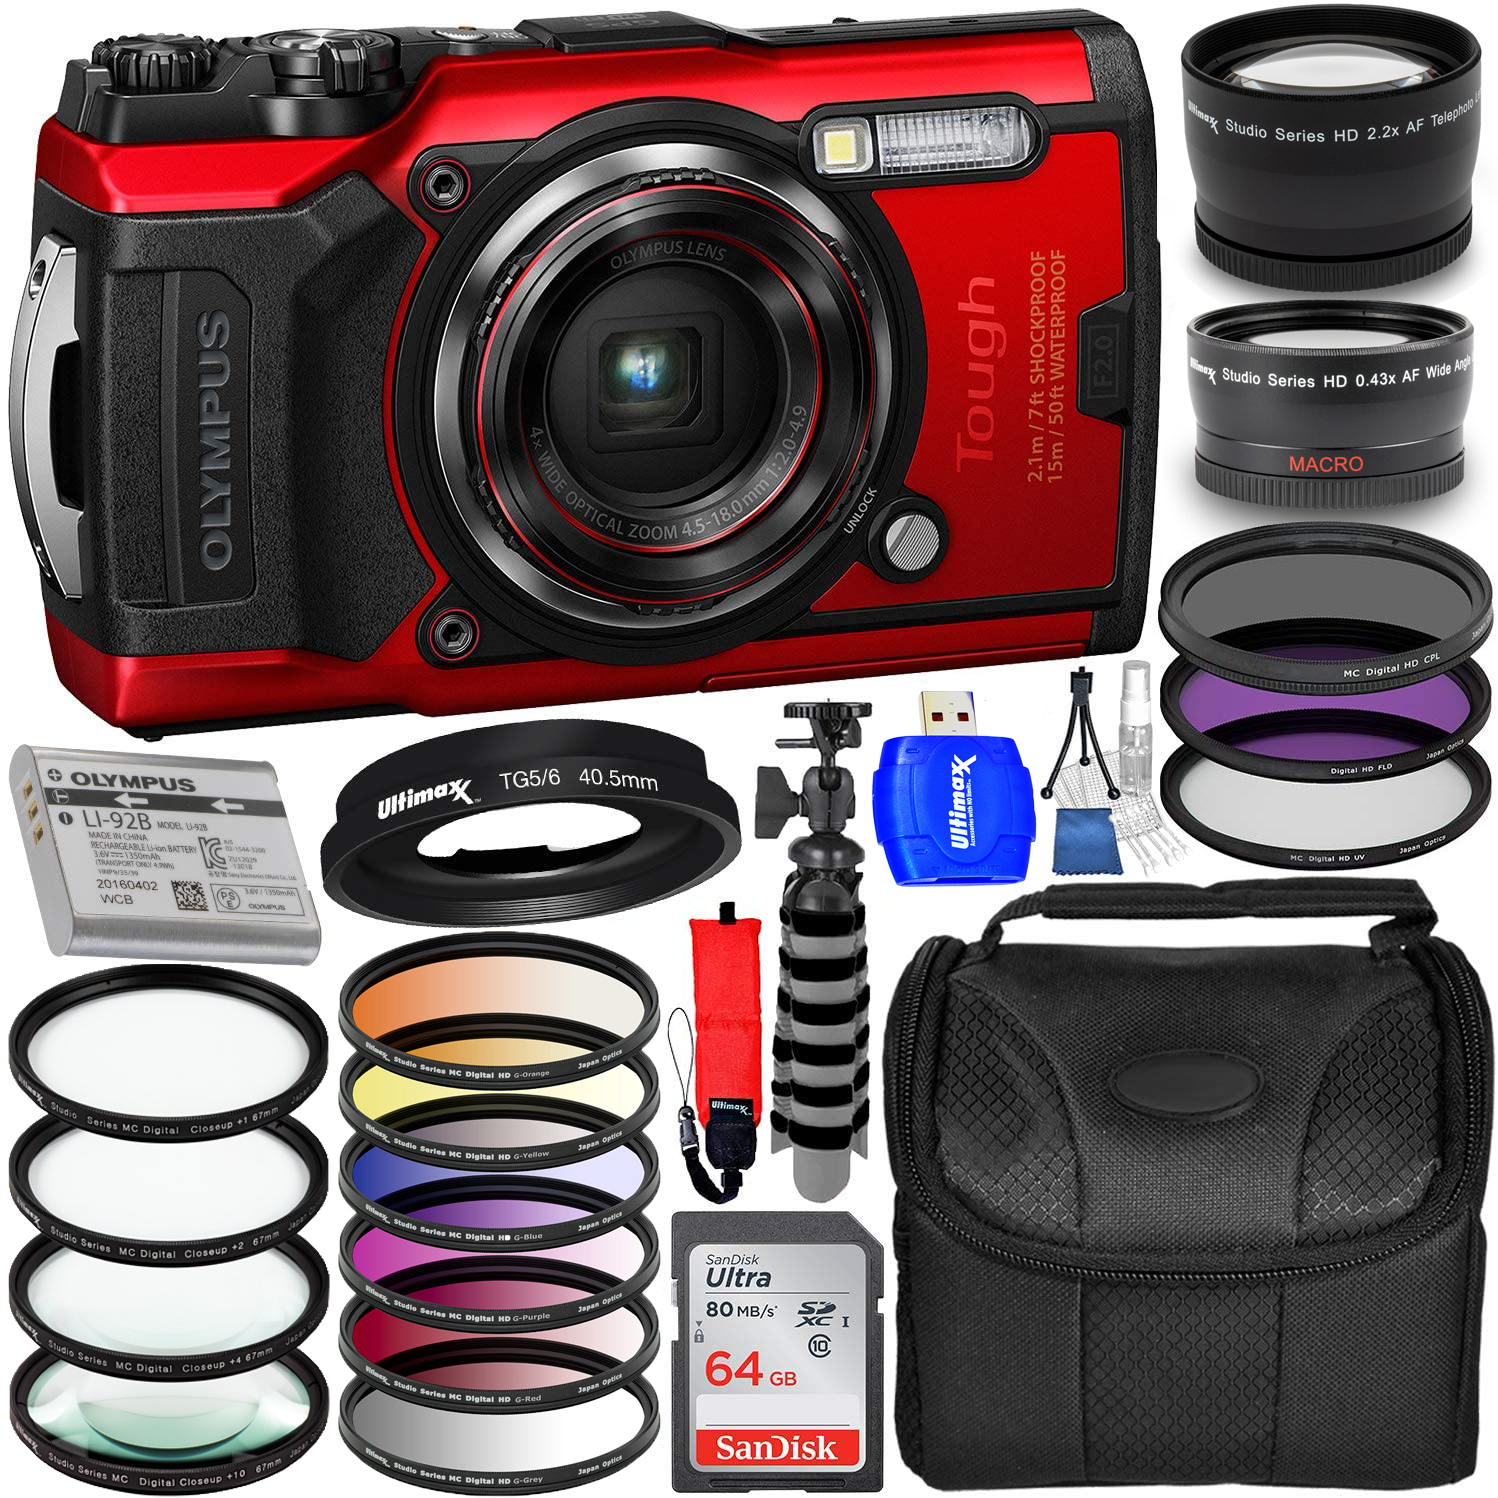 Olympus Tough TG-6 Digital Camera (Red) V104210RU000 + 64GB + Filter Kit Bundle - image 1 of 7